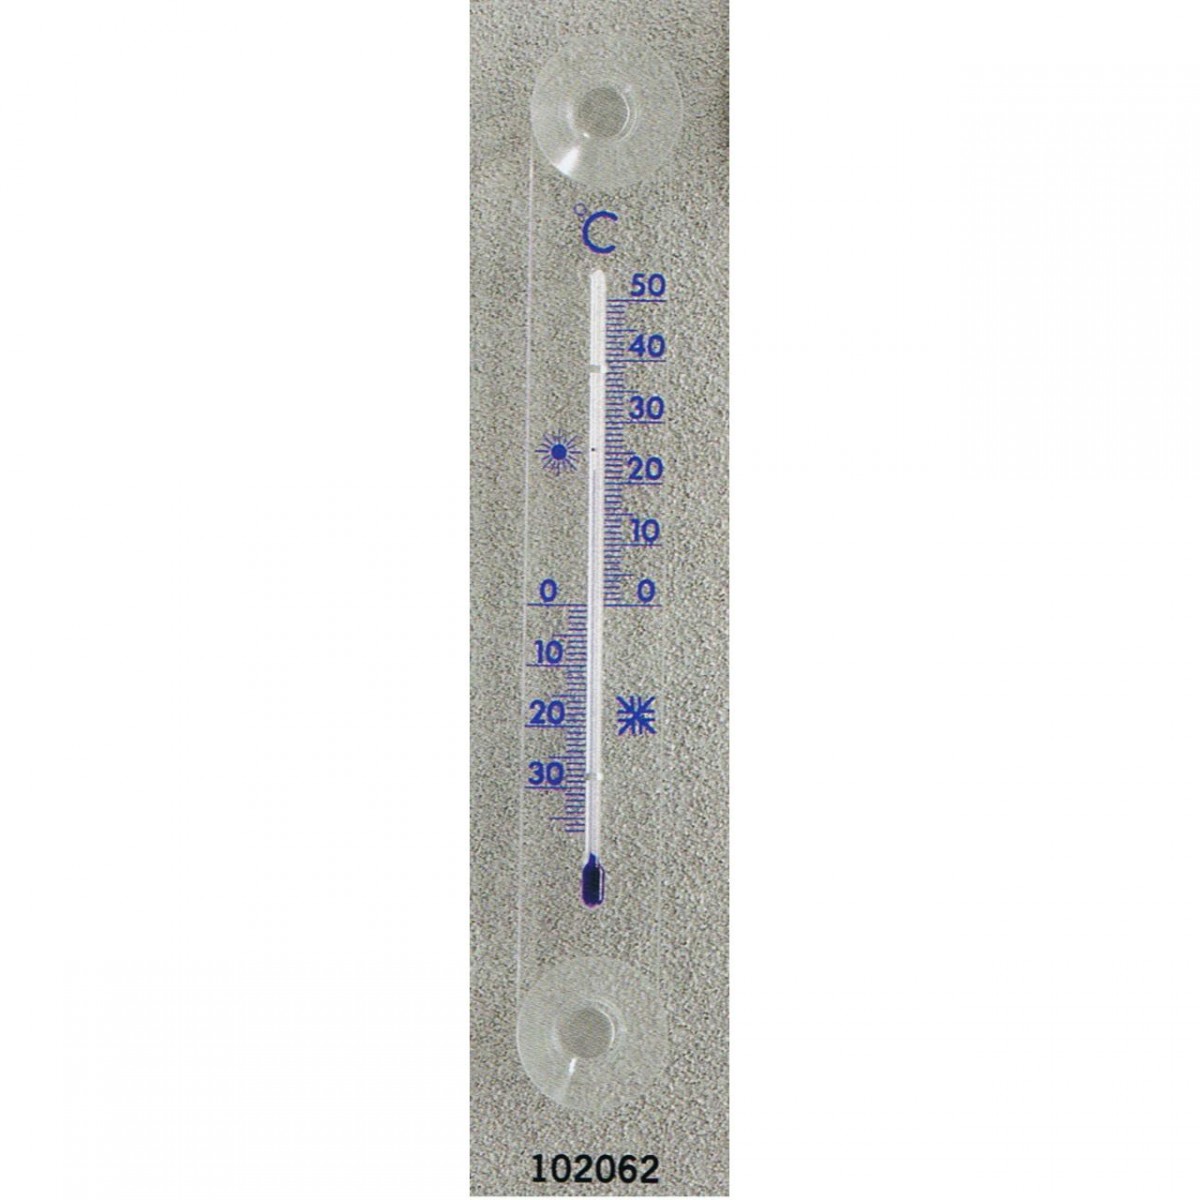 Thermomètre fenêtre 210 mm ventouse. - Florol